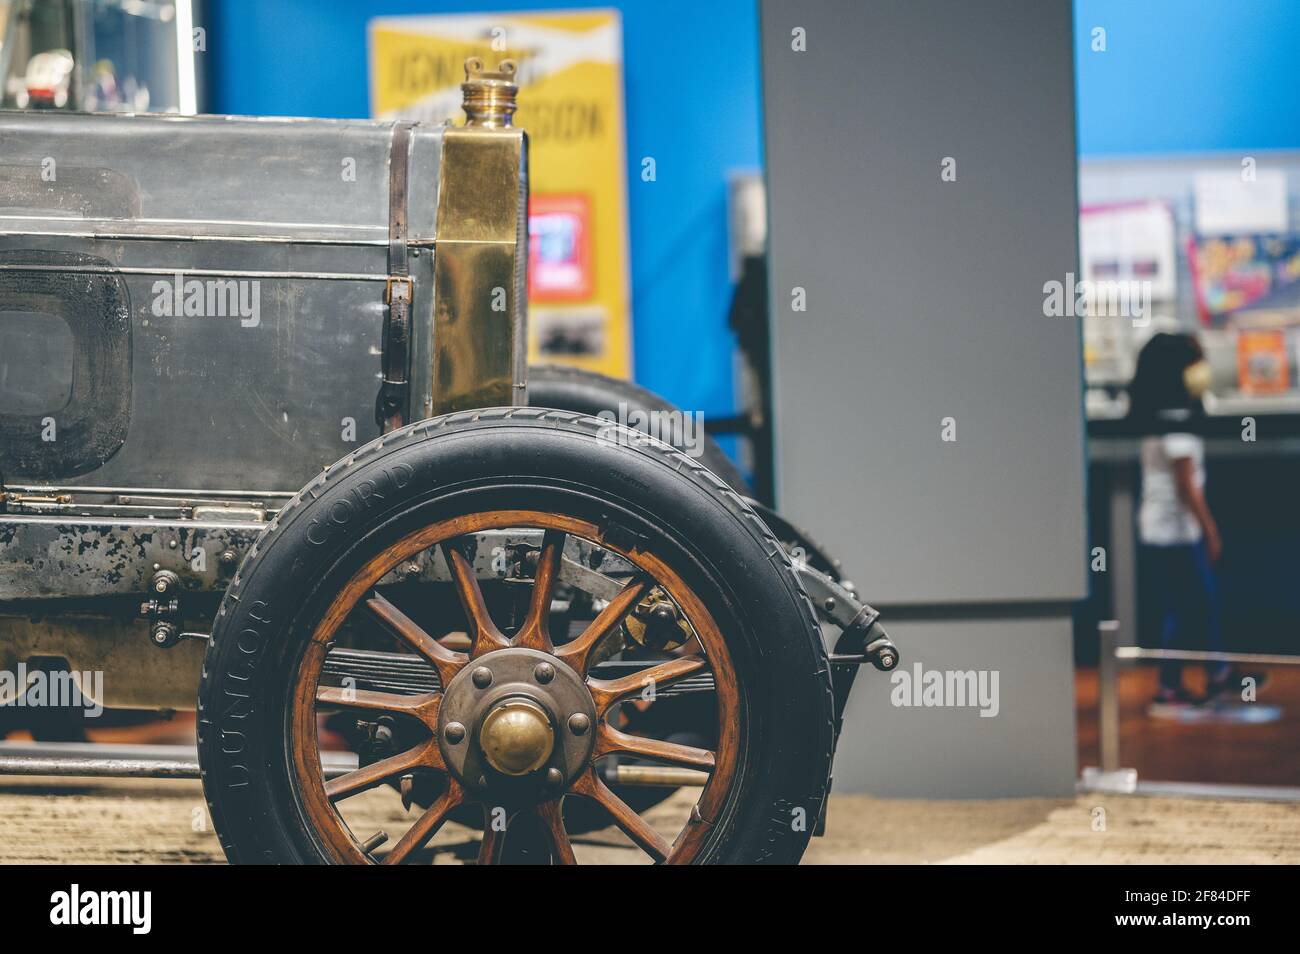 Une roue d'une ancienne calèche d'époque dans un musée Banque D'Images